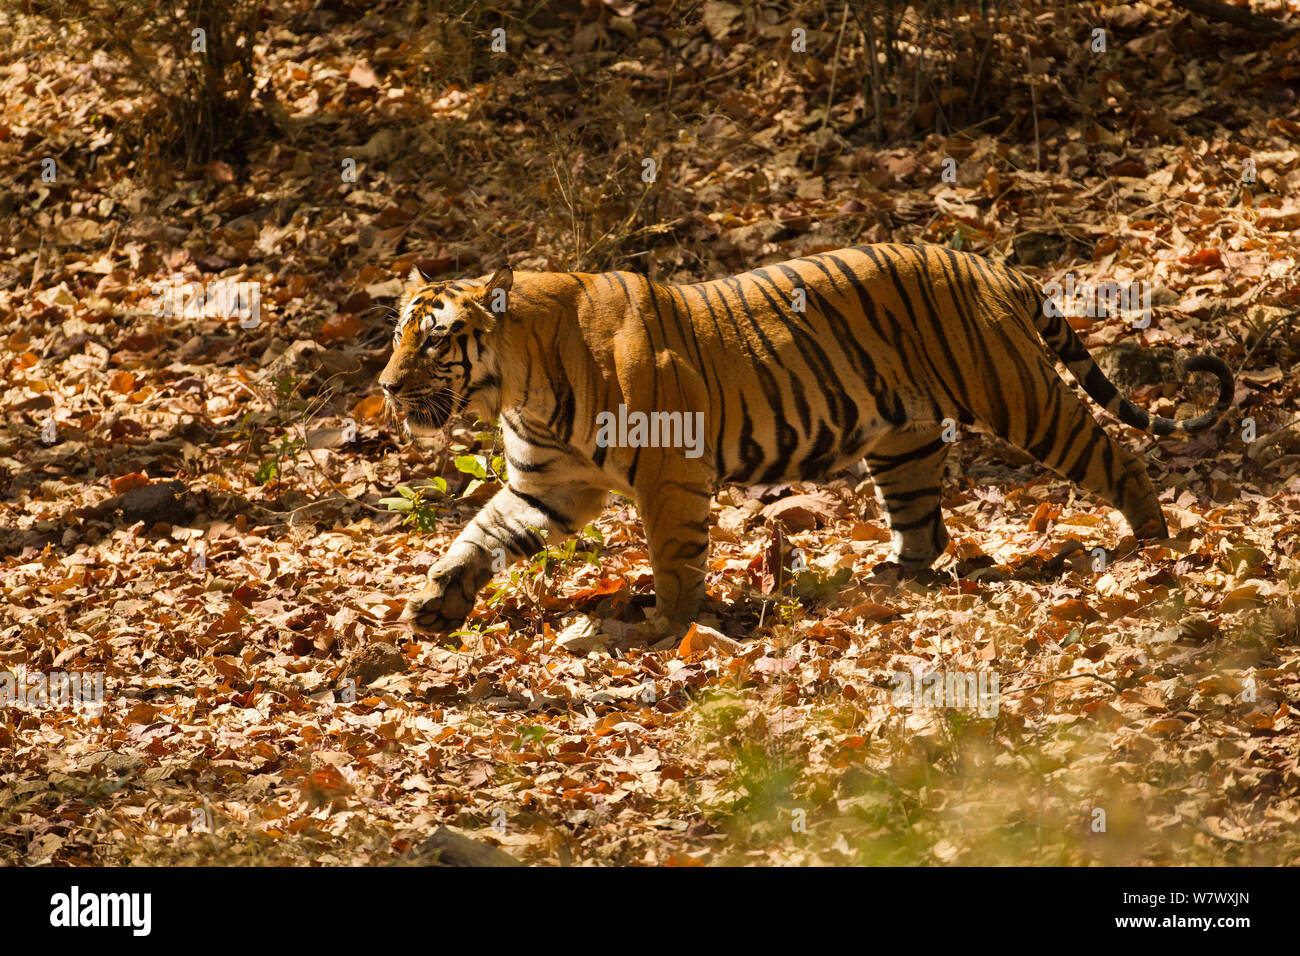 Tigre de Bengala (Panthera tigris tigris) caminar, Parque Nacional Bandhavgarh, Madhya Pradesh, India. Especies en peligro de extinción. Foto de stock